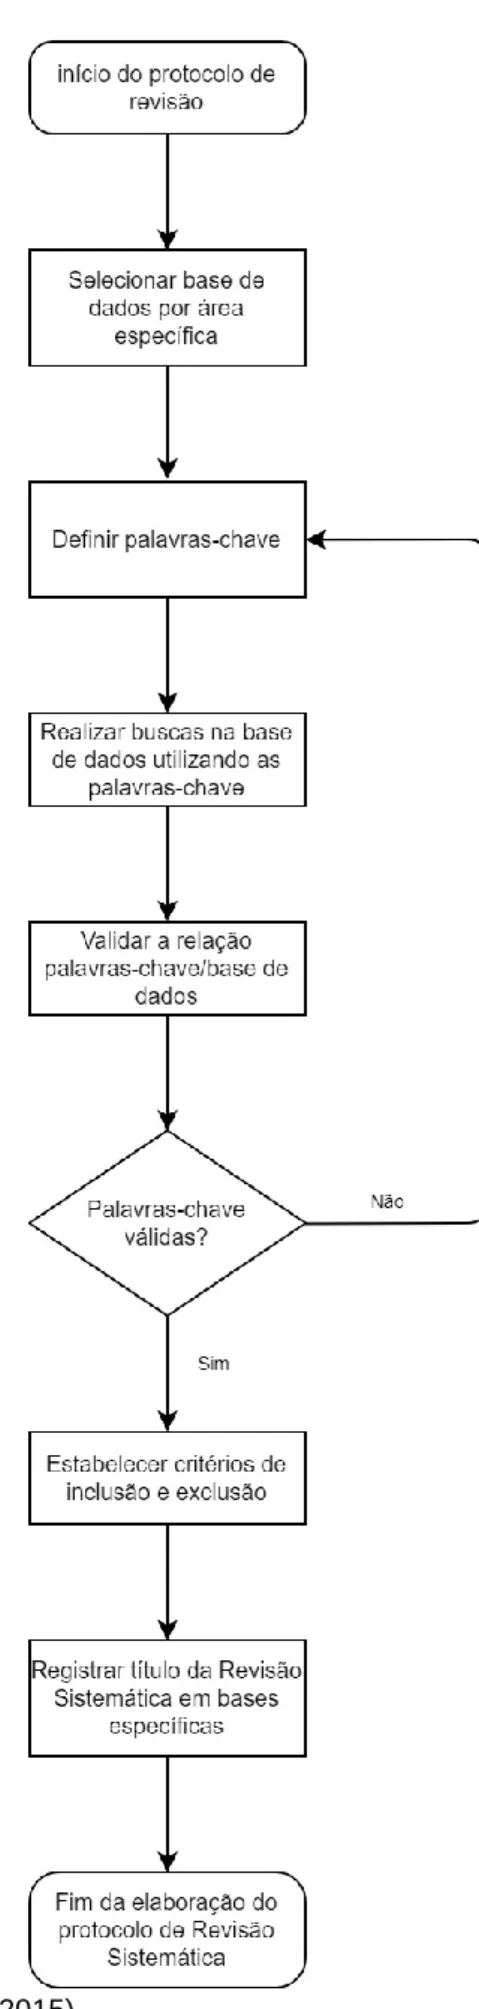 Figura 3.3 - Elaboração do protocolo de revisão 